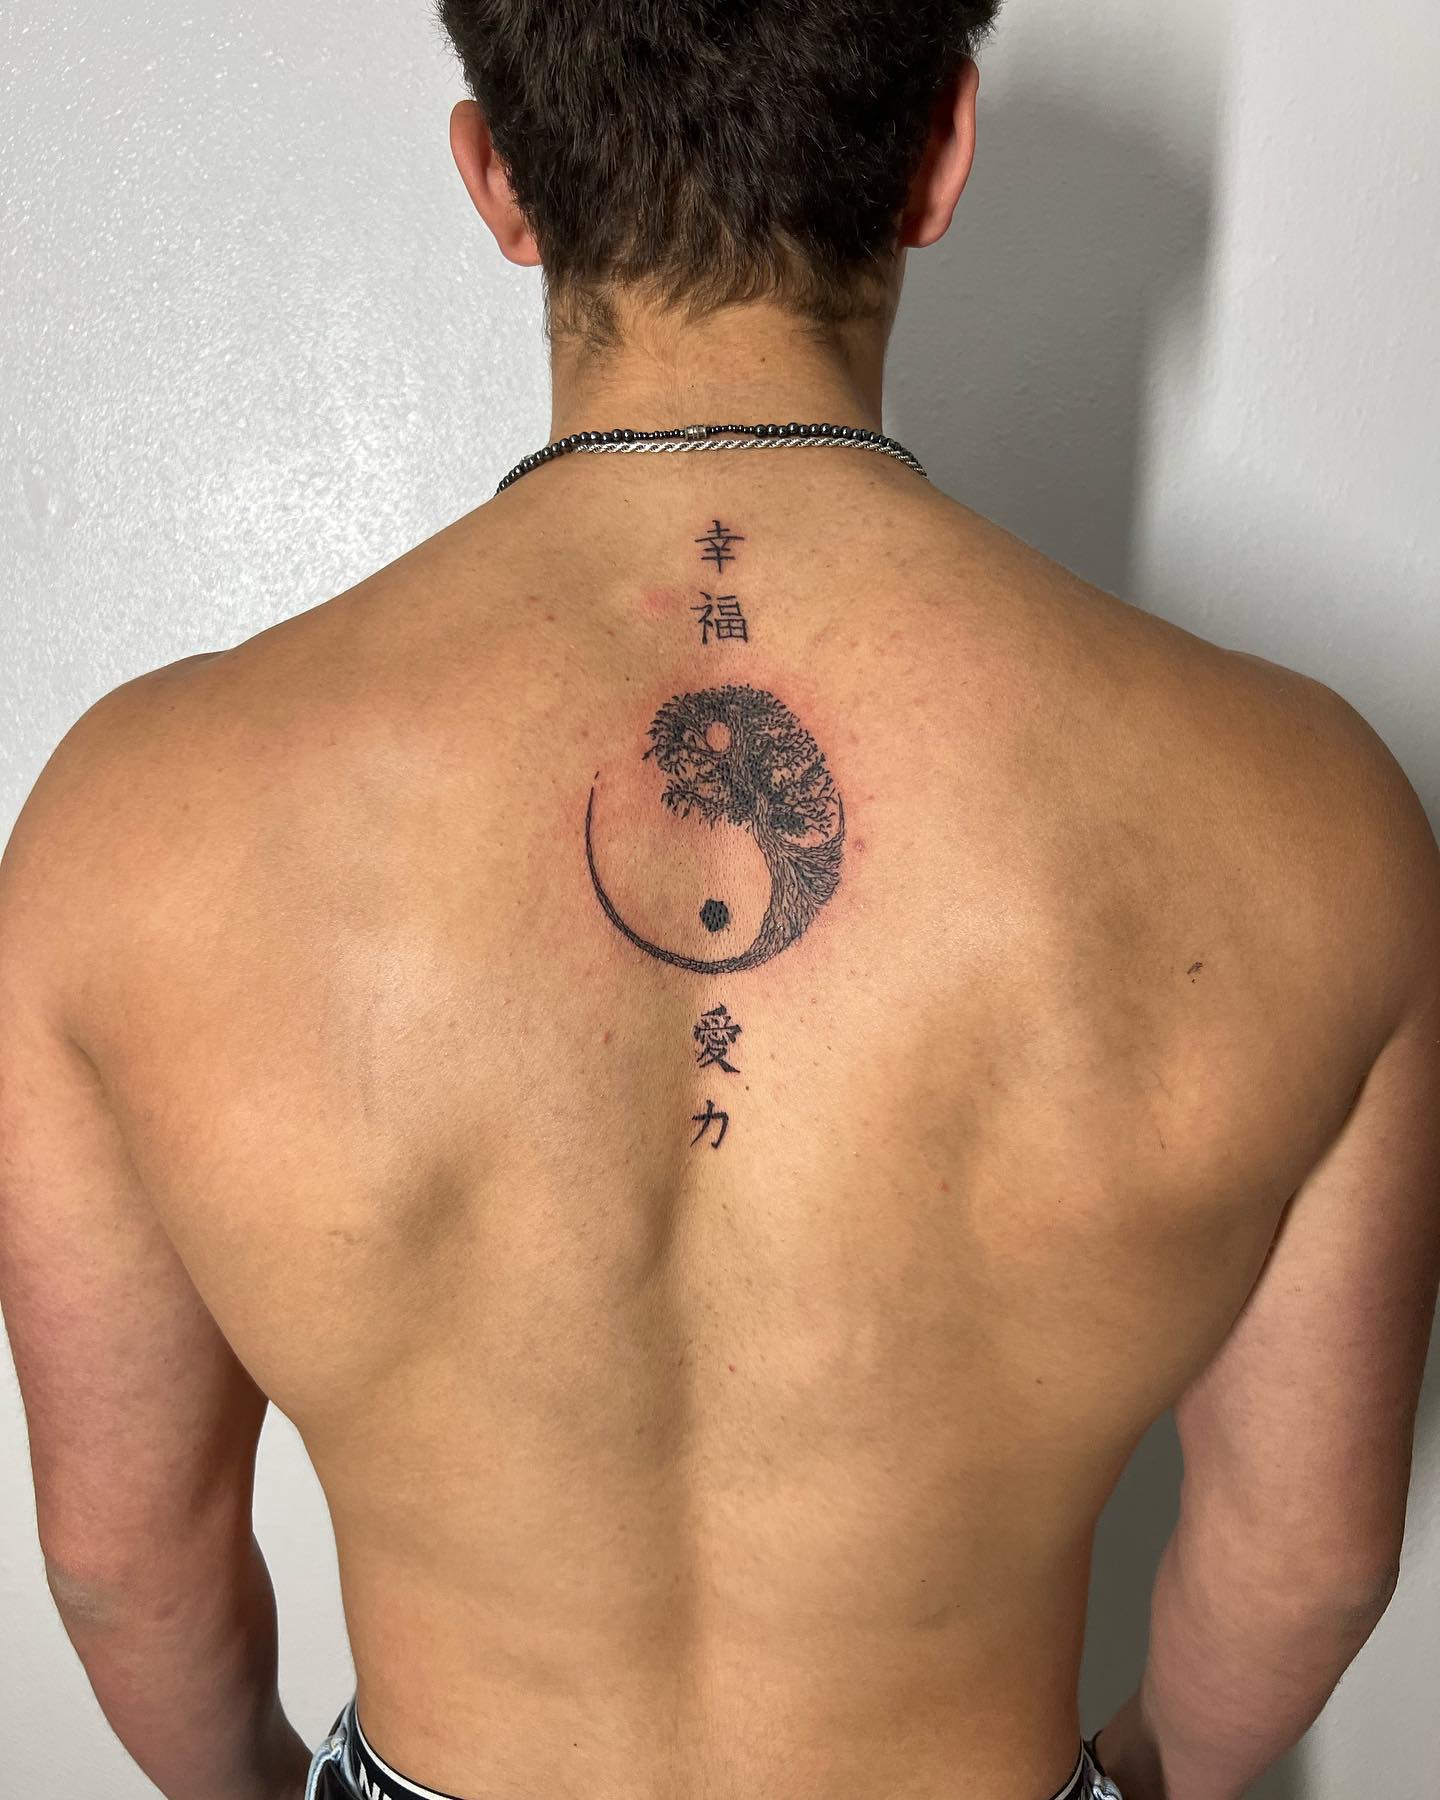 Tatuaje de Yin y Yang en la espalda